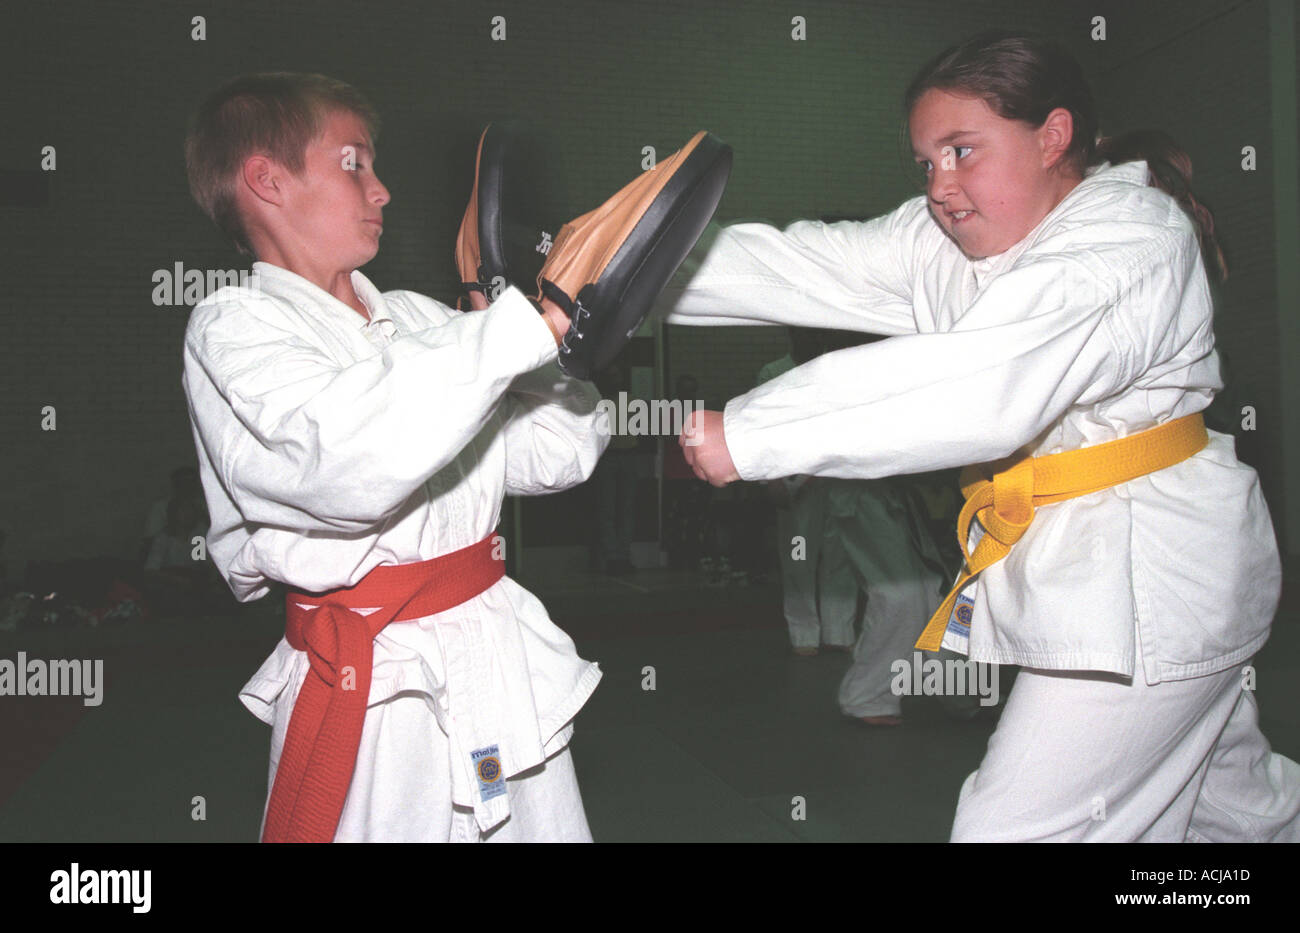 Deux jeunes pratiquent leur compétences d'arts martiaux Middlesex Hillingdon UK Banque D'Images